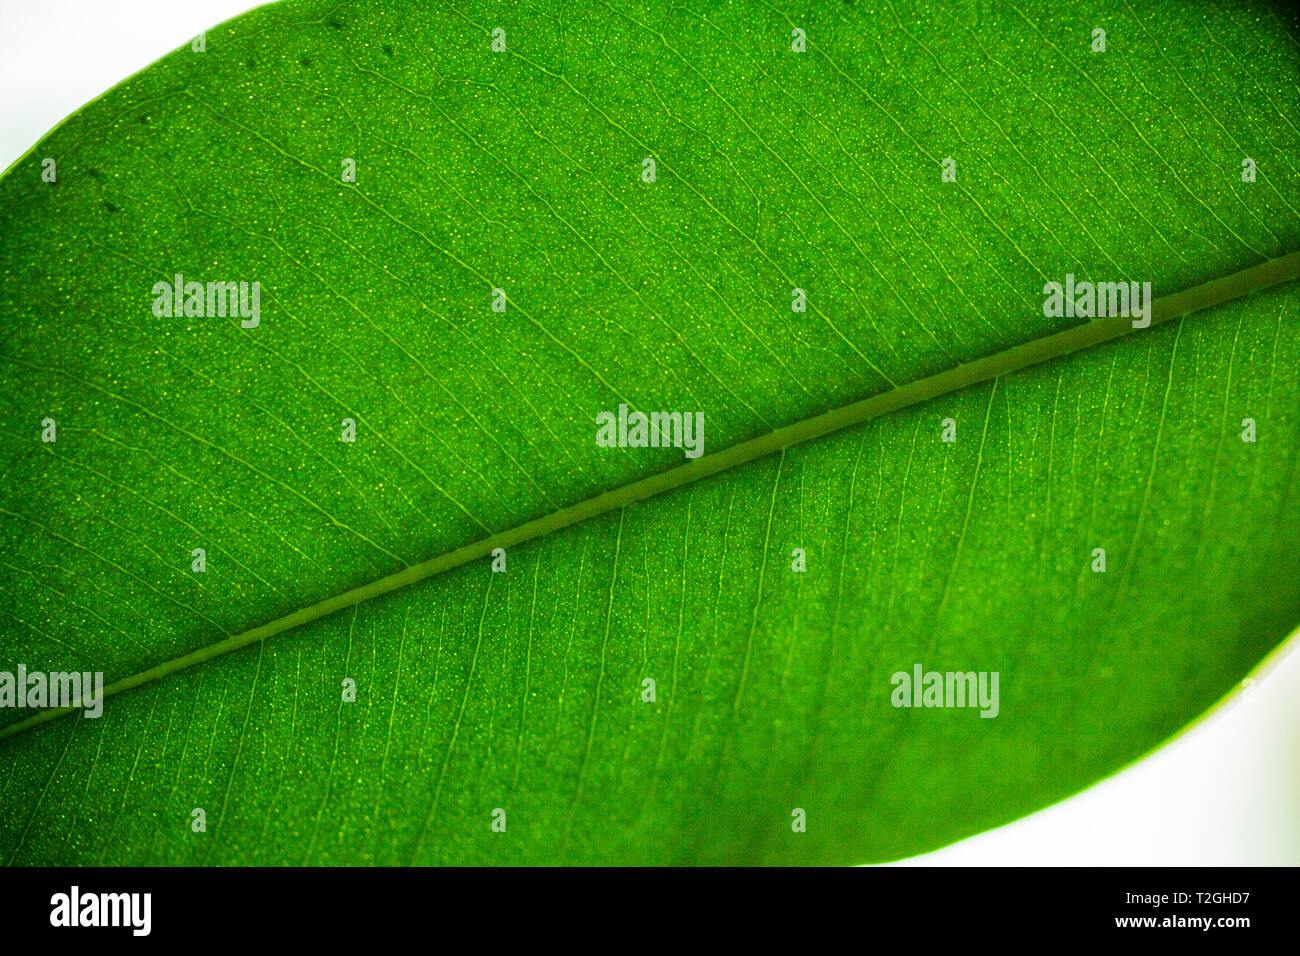 Macro photographie, close-up of green couche de feuilles Ficus benjamina (figuier pleureur, Benjamin fig).Un vitrail. Photo par le soleil Banque D'Images